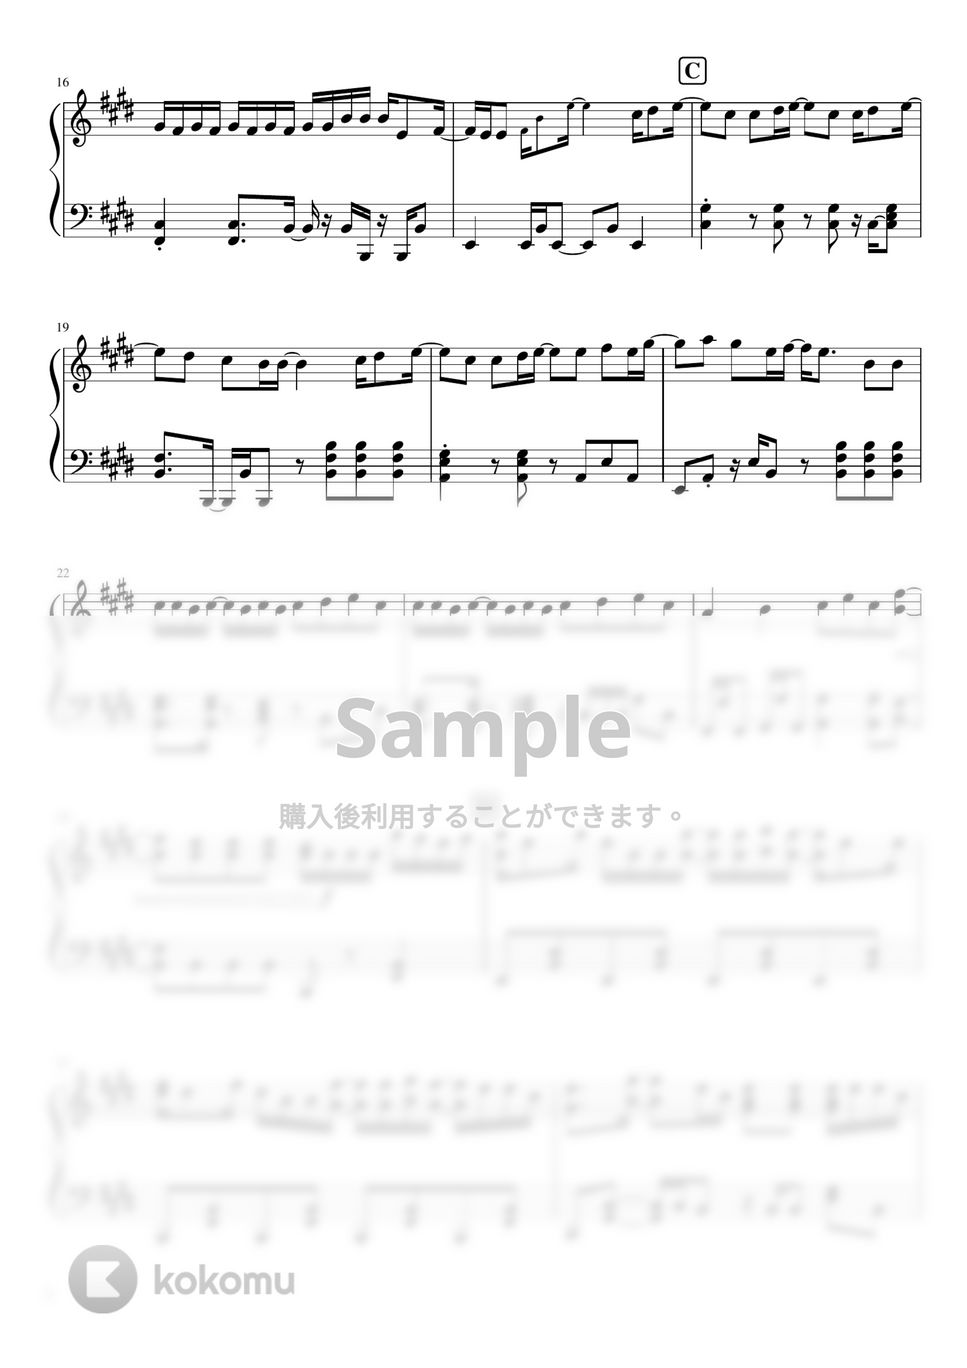 なにわ男子 - #MerryChristmas (なにわ男子 3rd single/ハッピーサプライズ(全形態共通カップリング曲)) by ピアノぷりん